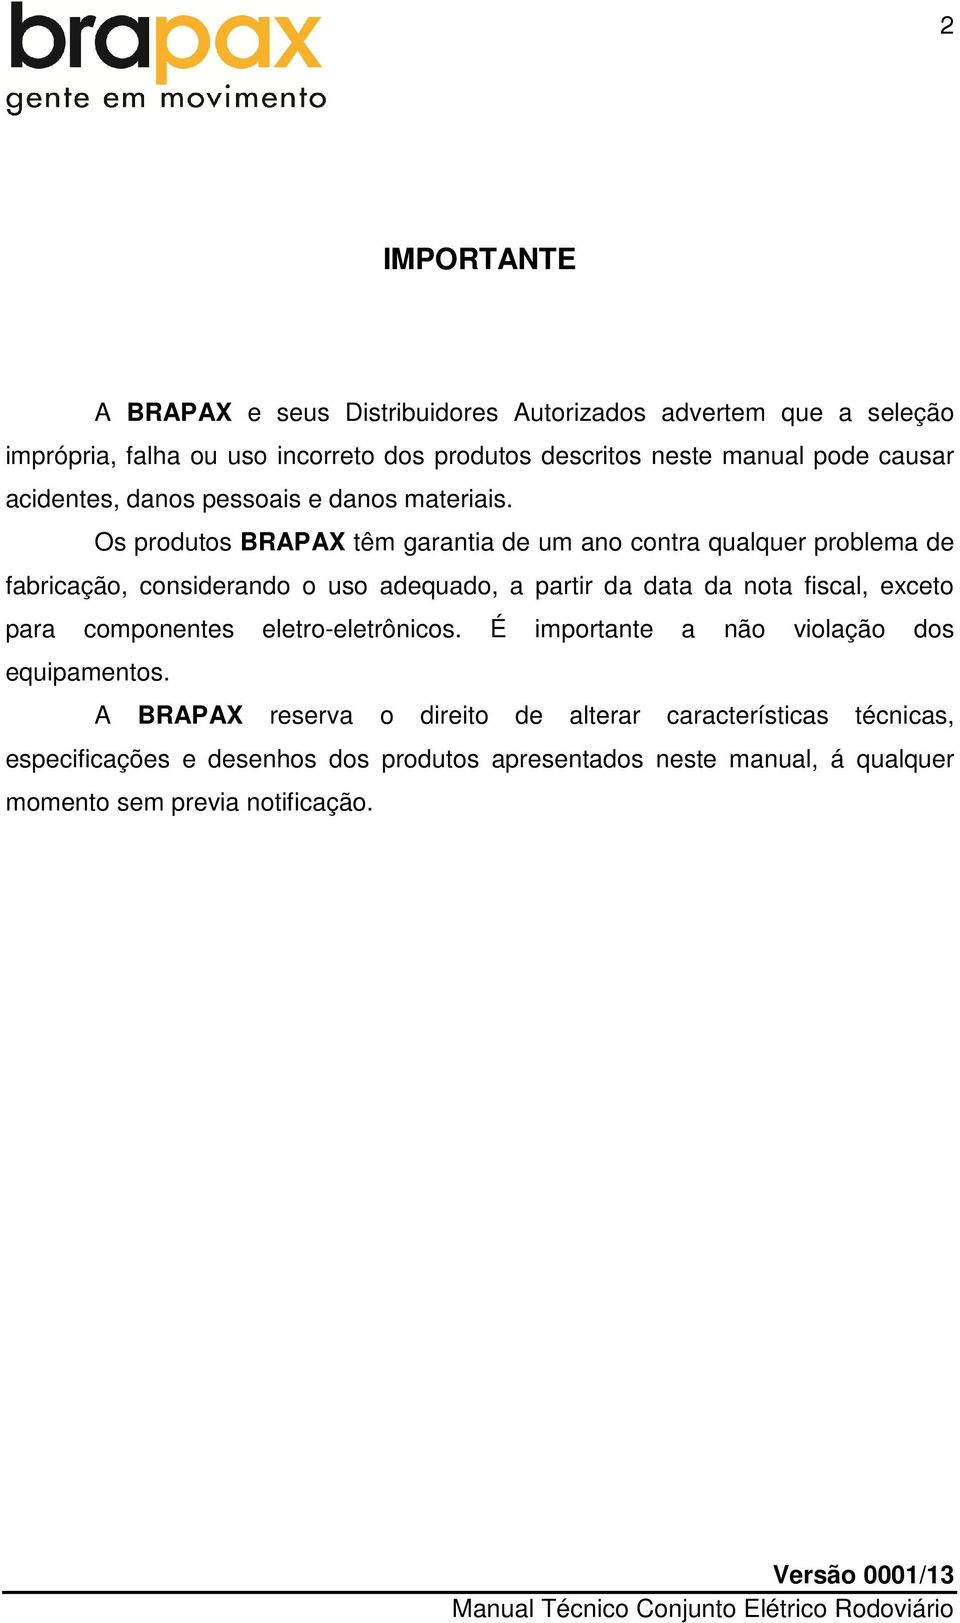 Os produtos BRAPAX têm garantia de um ano contra qualquer problema de fabricação, considerando o uso adequado, a partir da data da nota fiscal, exceto